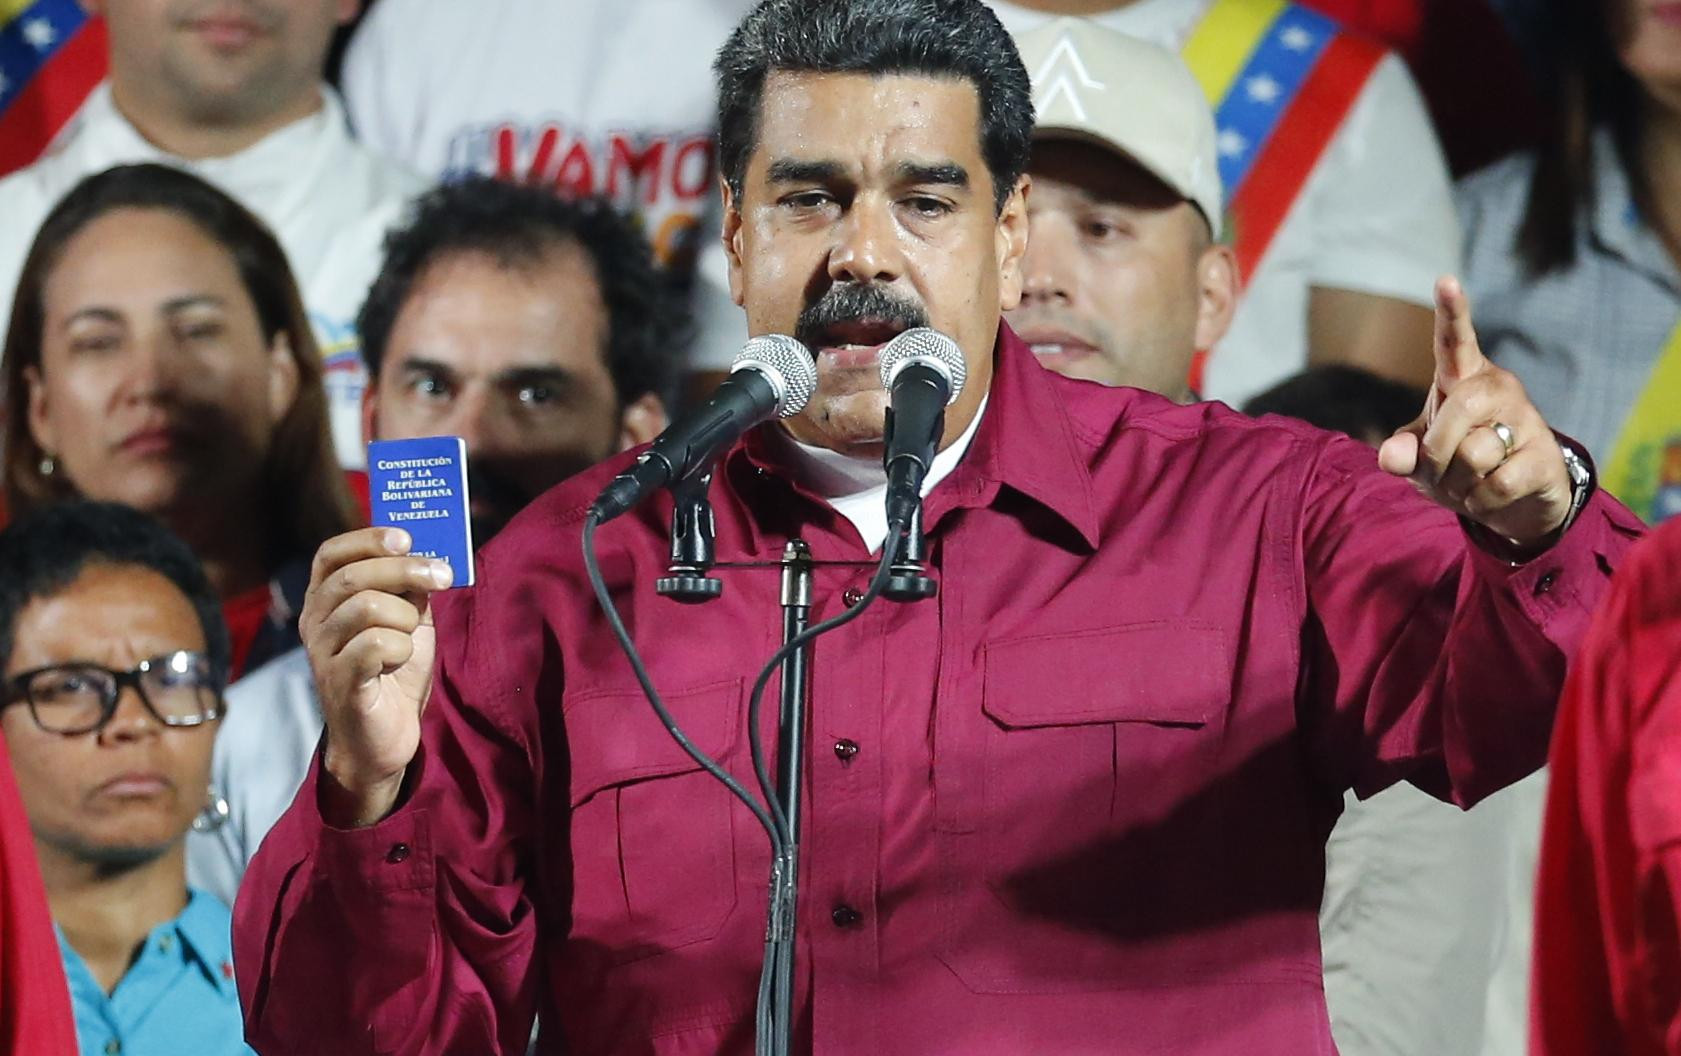 NEĆU OKLEVATI DA KAZNIM IZDAJNIKE I POŠALJEM IH IZA REŠETAKA! Maduro sprema oštre mere za organizatore vojne pobune u Venecueli!